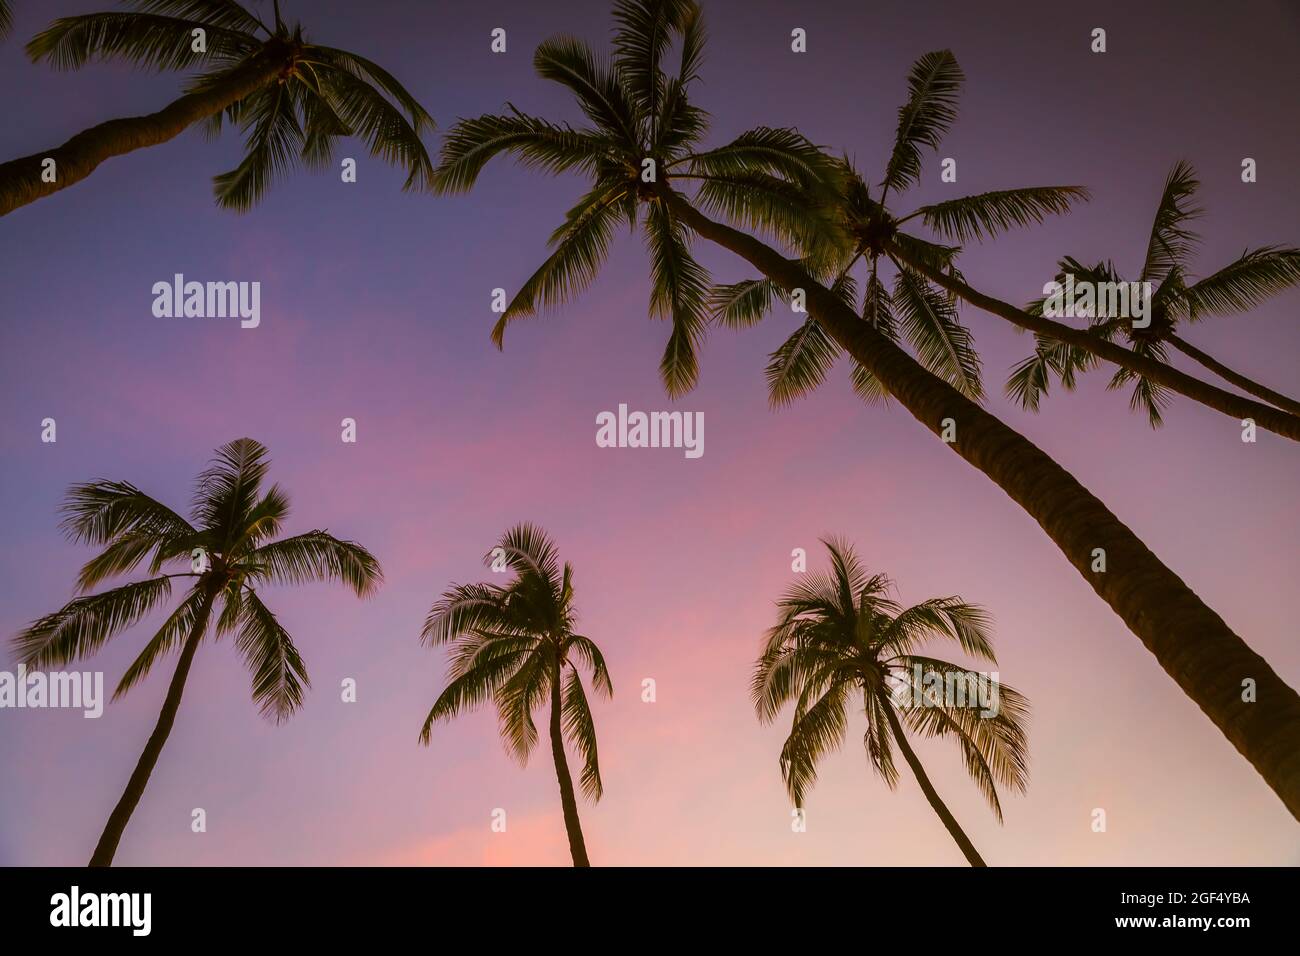 Siluetas de palmeras que se levantan contra el cielo púrpura al atardecer Foto de stock